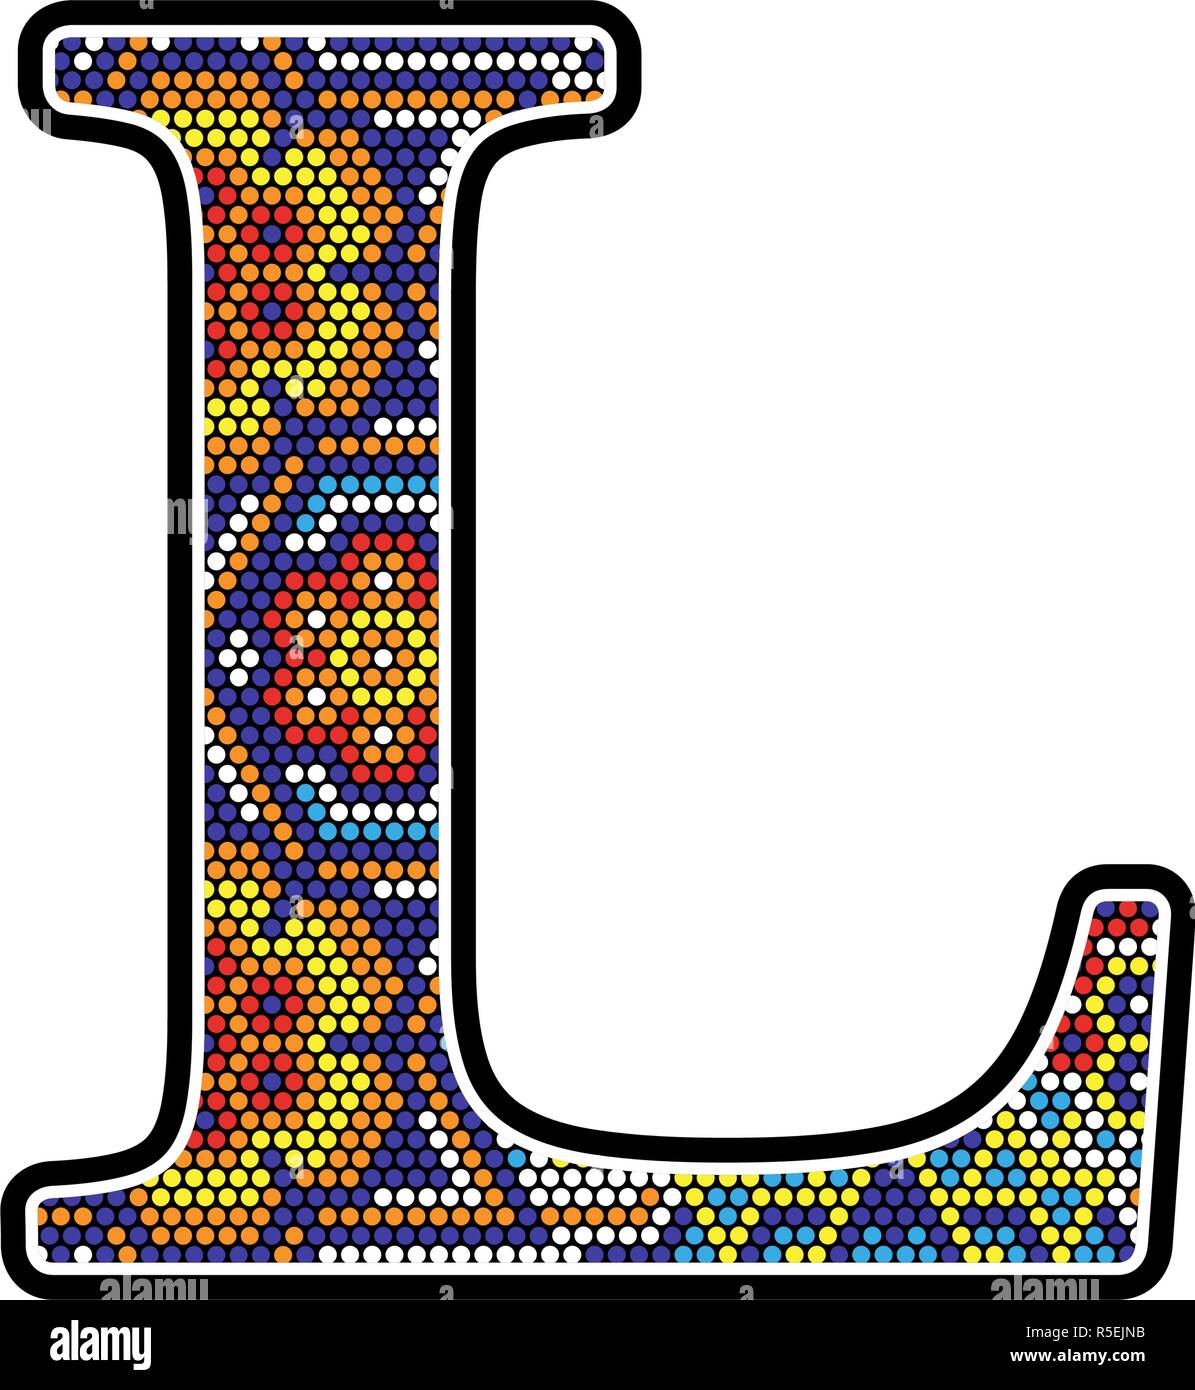 L initiale avec des points colorés abstract design avec style art Huichol du Mexique Illustration de Vecteur